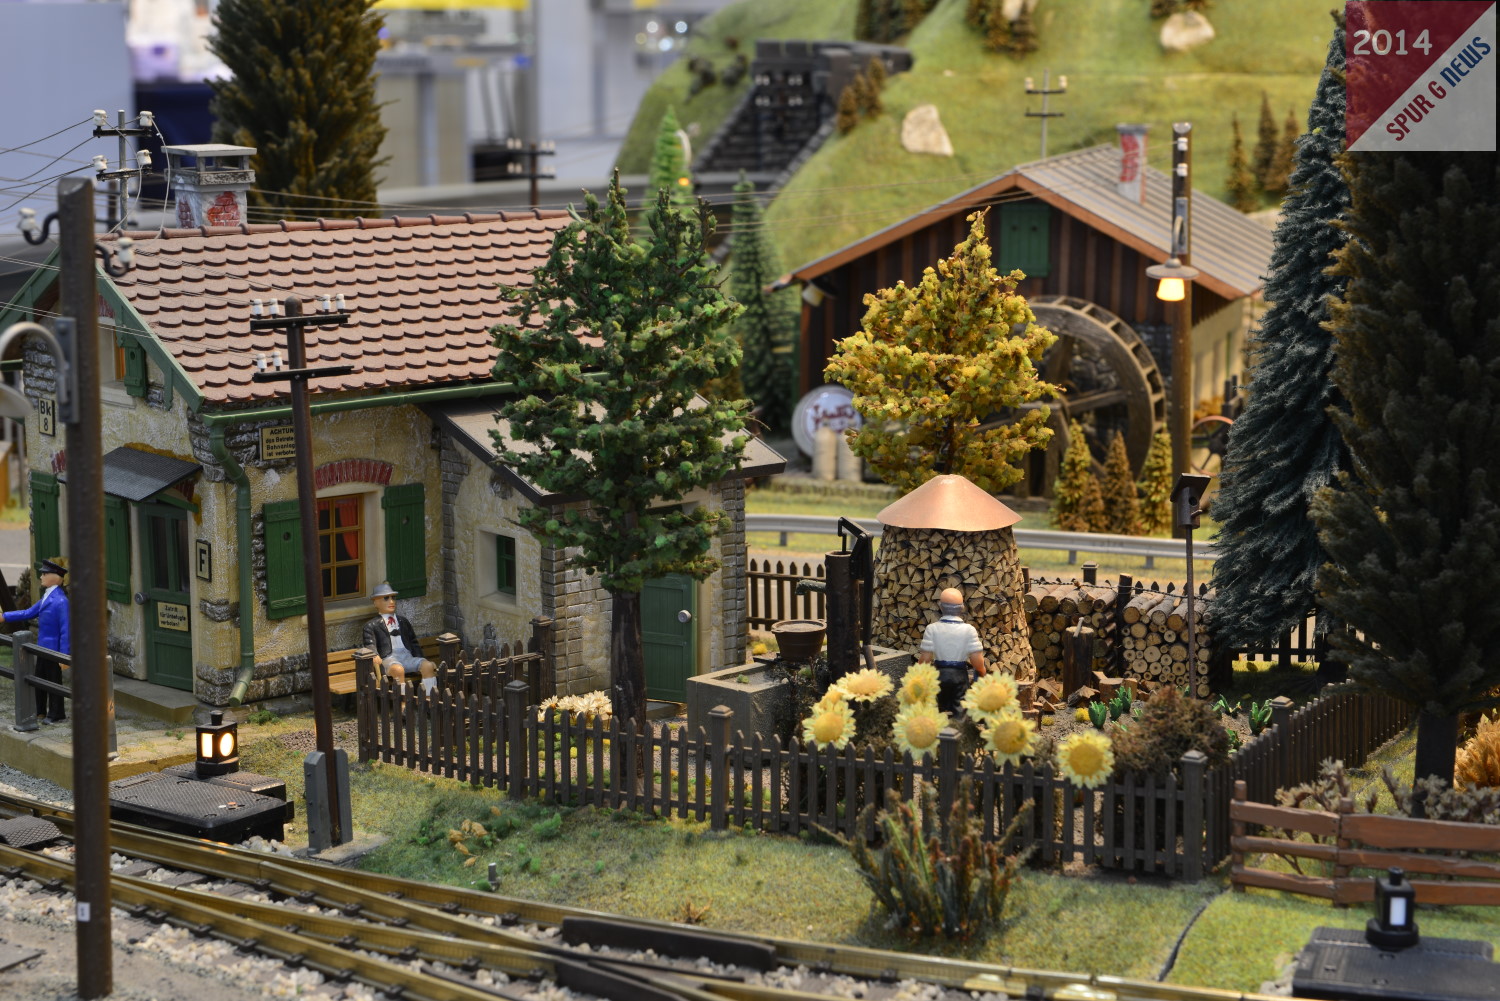 Detailaufnahme von der LGB Ausstellungsanlage auf der Faszination Modellbahn in Sinsheim 2014